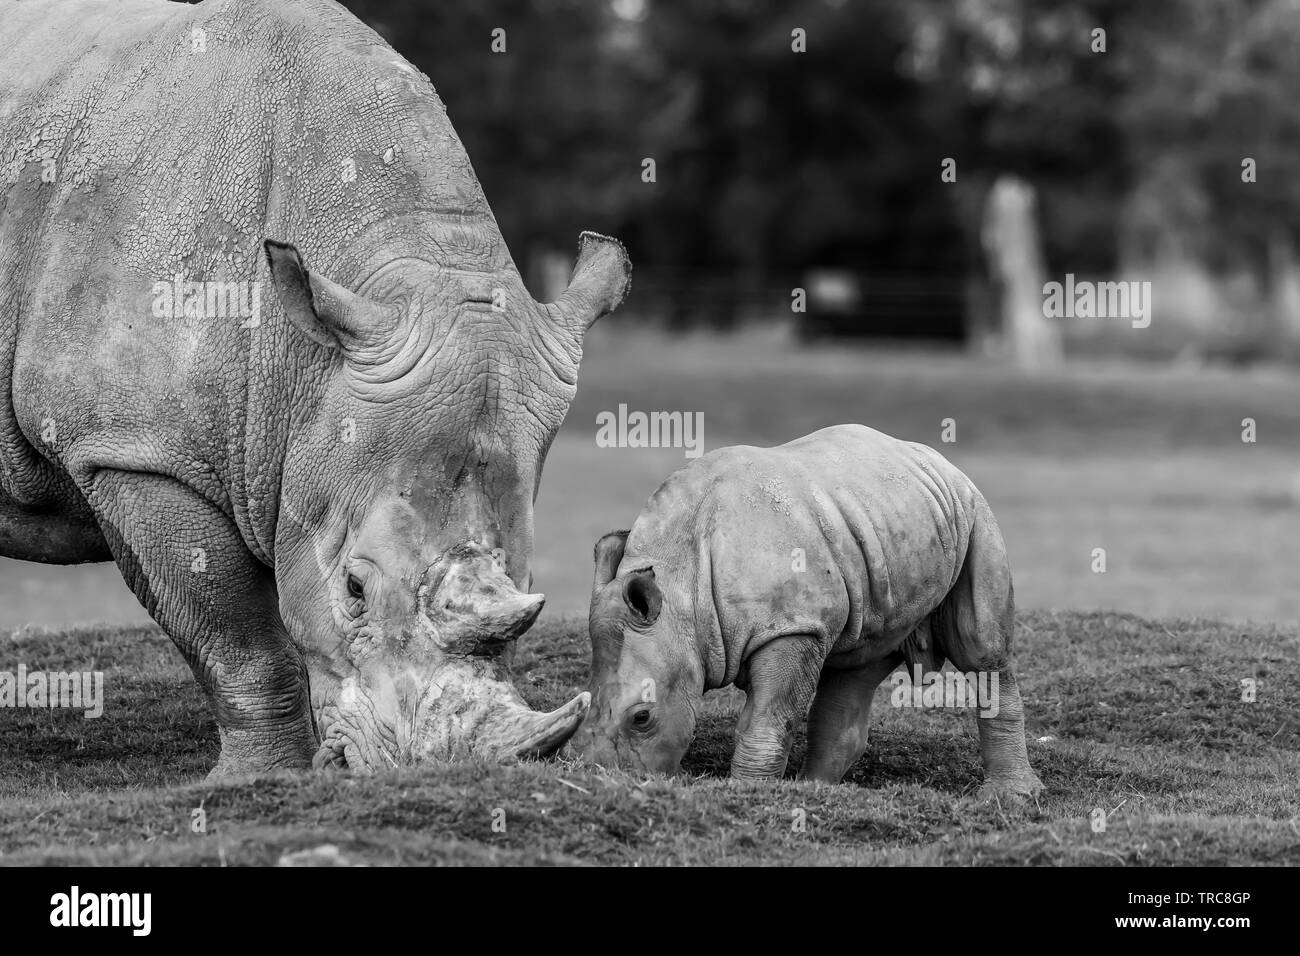 Blanco y negro detallada fotografía en primer plano del sur de rinoceronte blanco (Ceratotherium simum) Mother & Baby, comer juntos fuera de UK Wildlife Park. Foto de stock